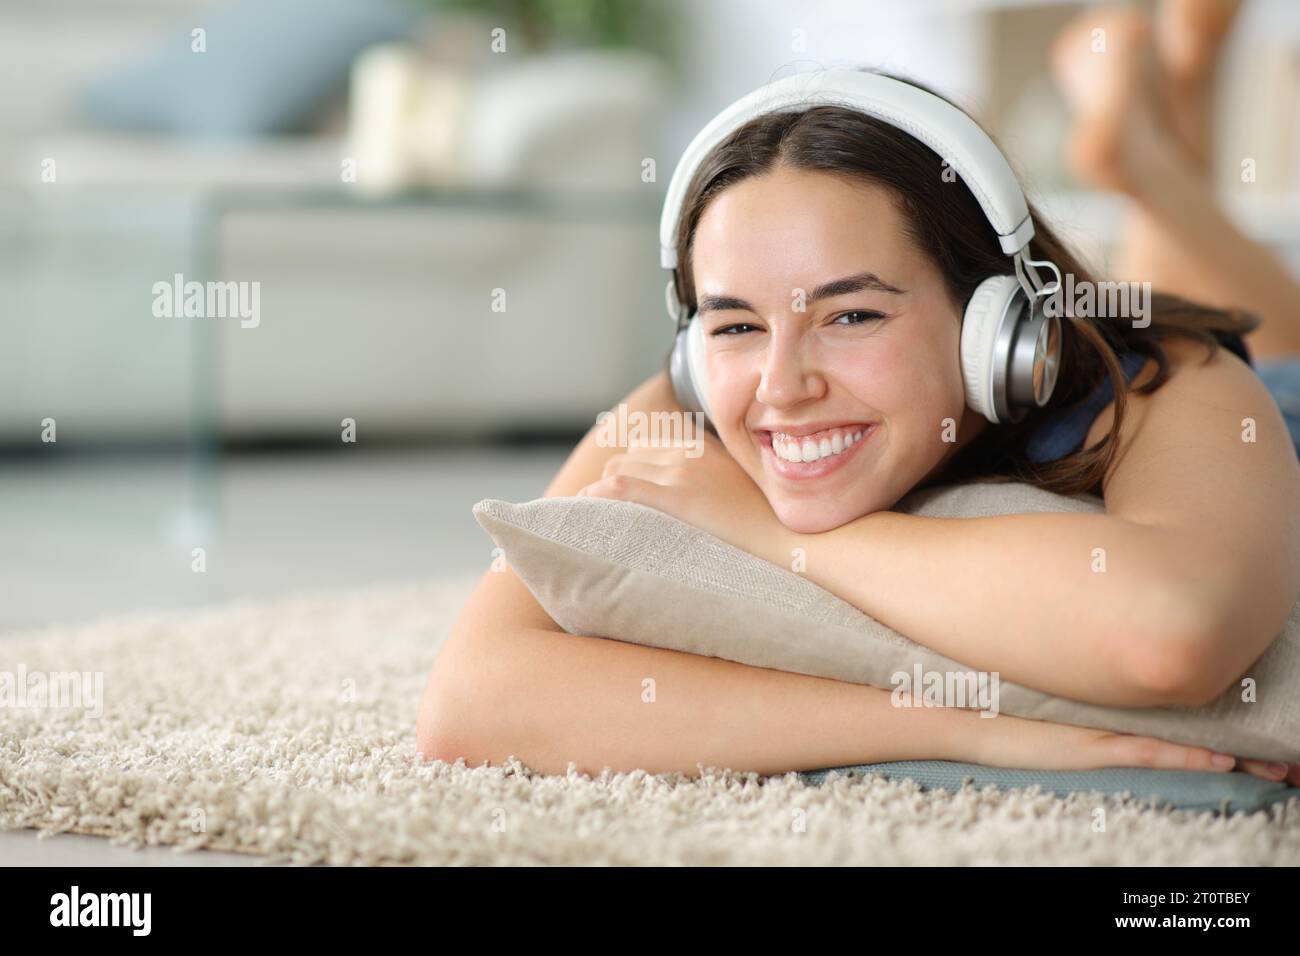 Femme heureuse te regarde porter un casque couché sur le sol à la maison Banque D'Images